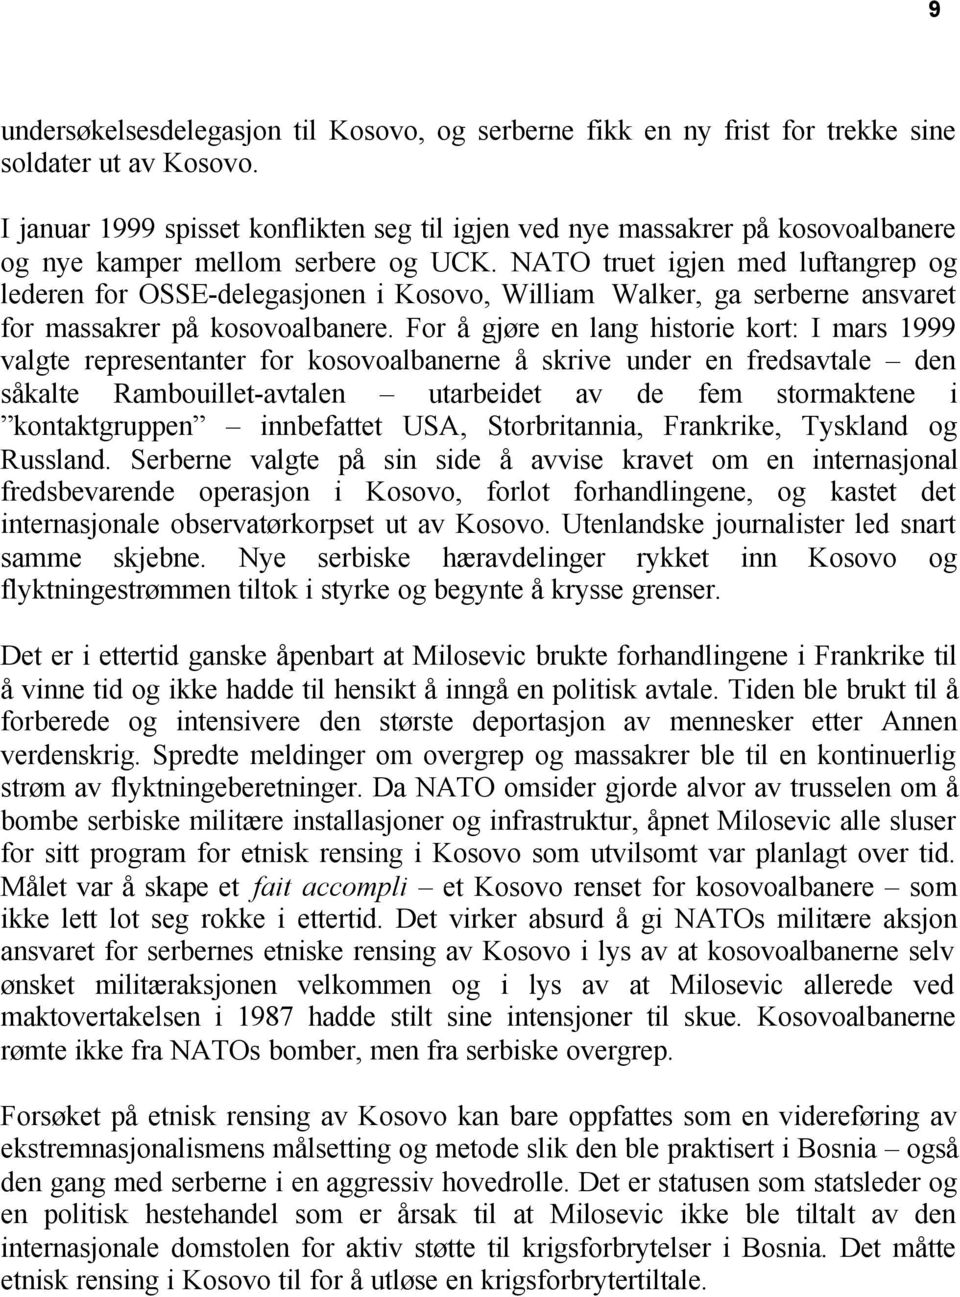 NATO truet igjen med luftangrep og lederen for OSSE-delegasjonen i Kosovo, William Walker, ga serberne ansvaret for massakrer på kosovoalbanere.